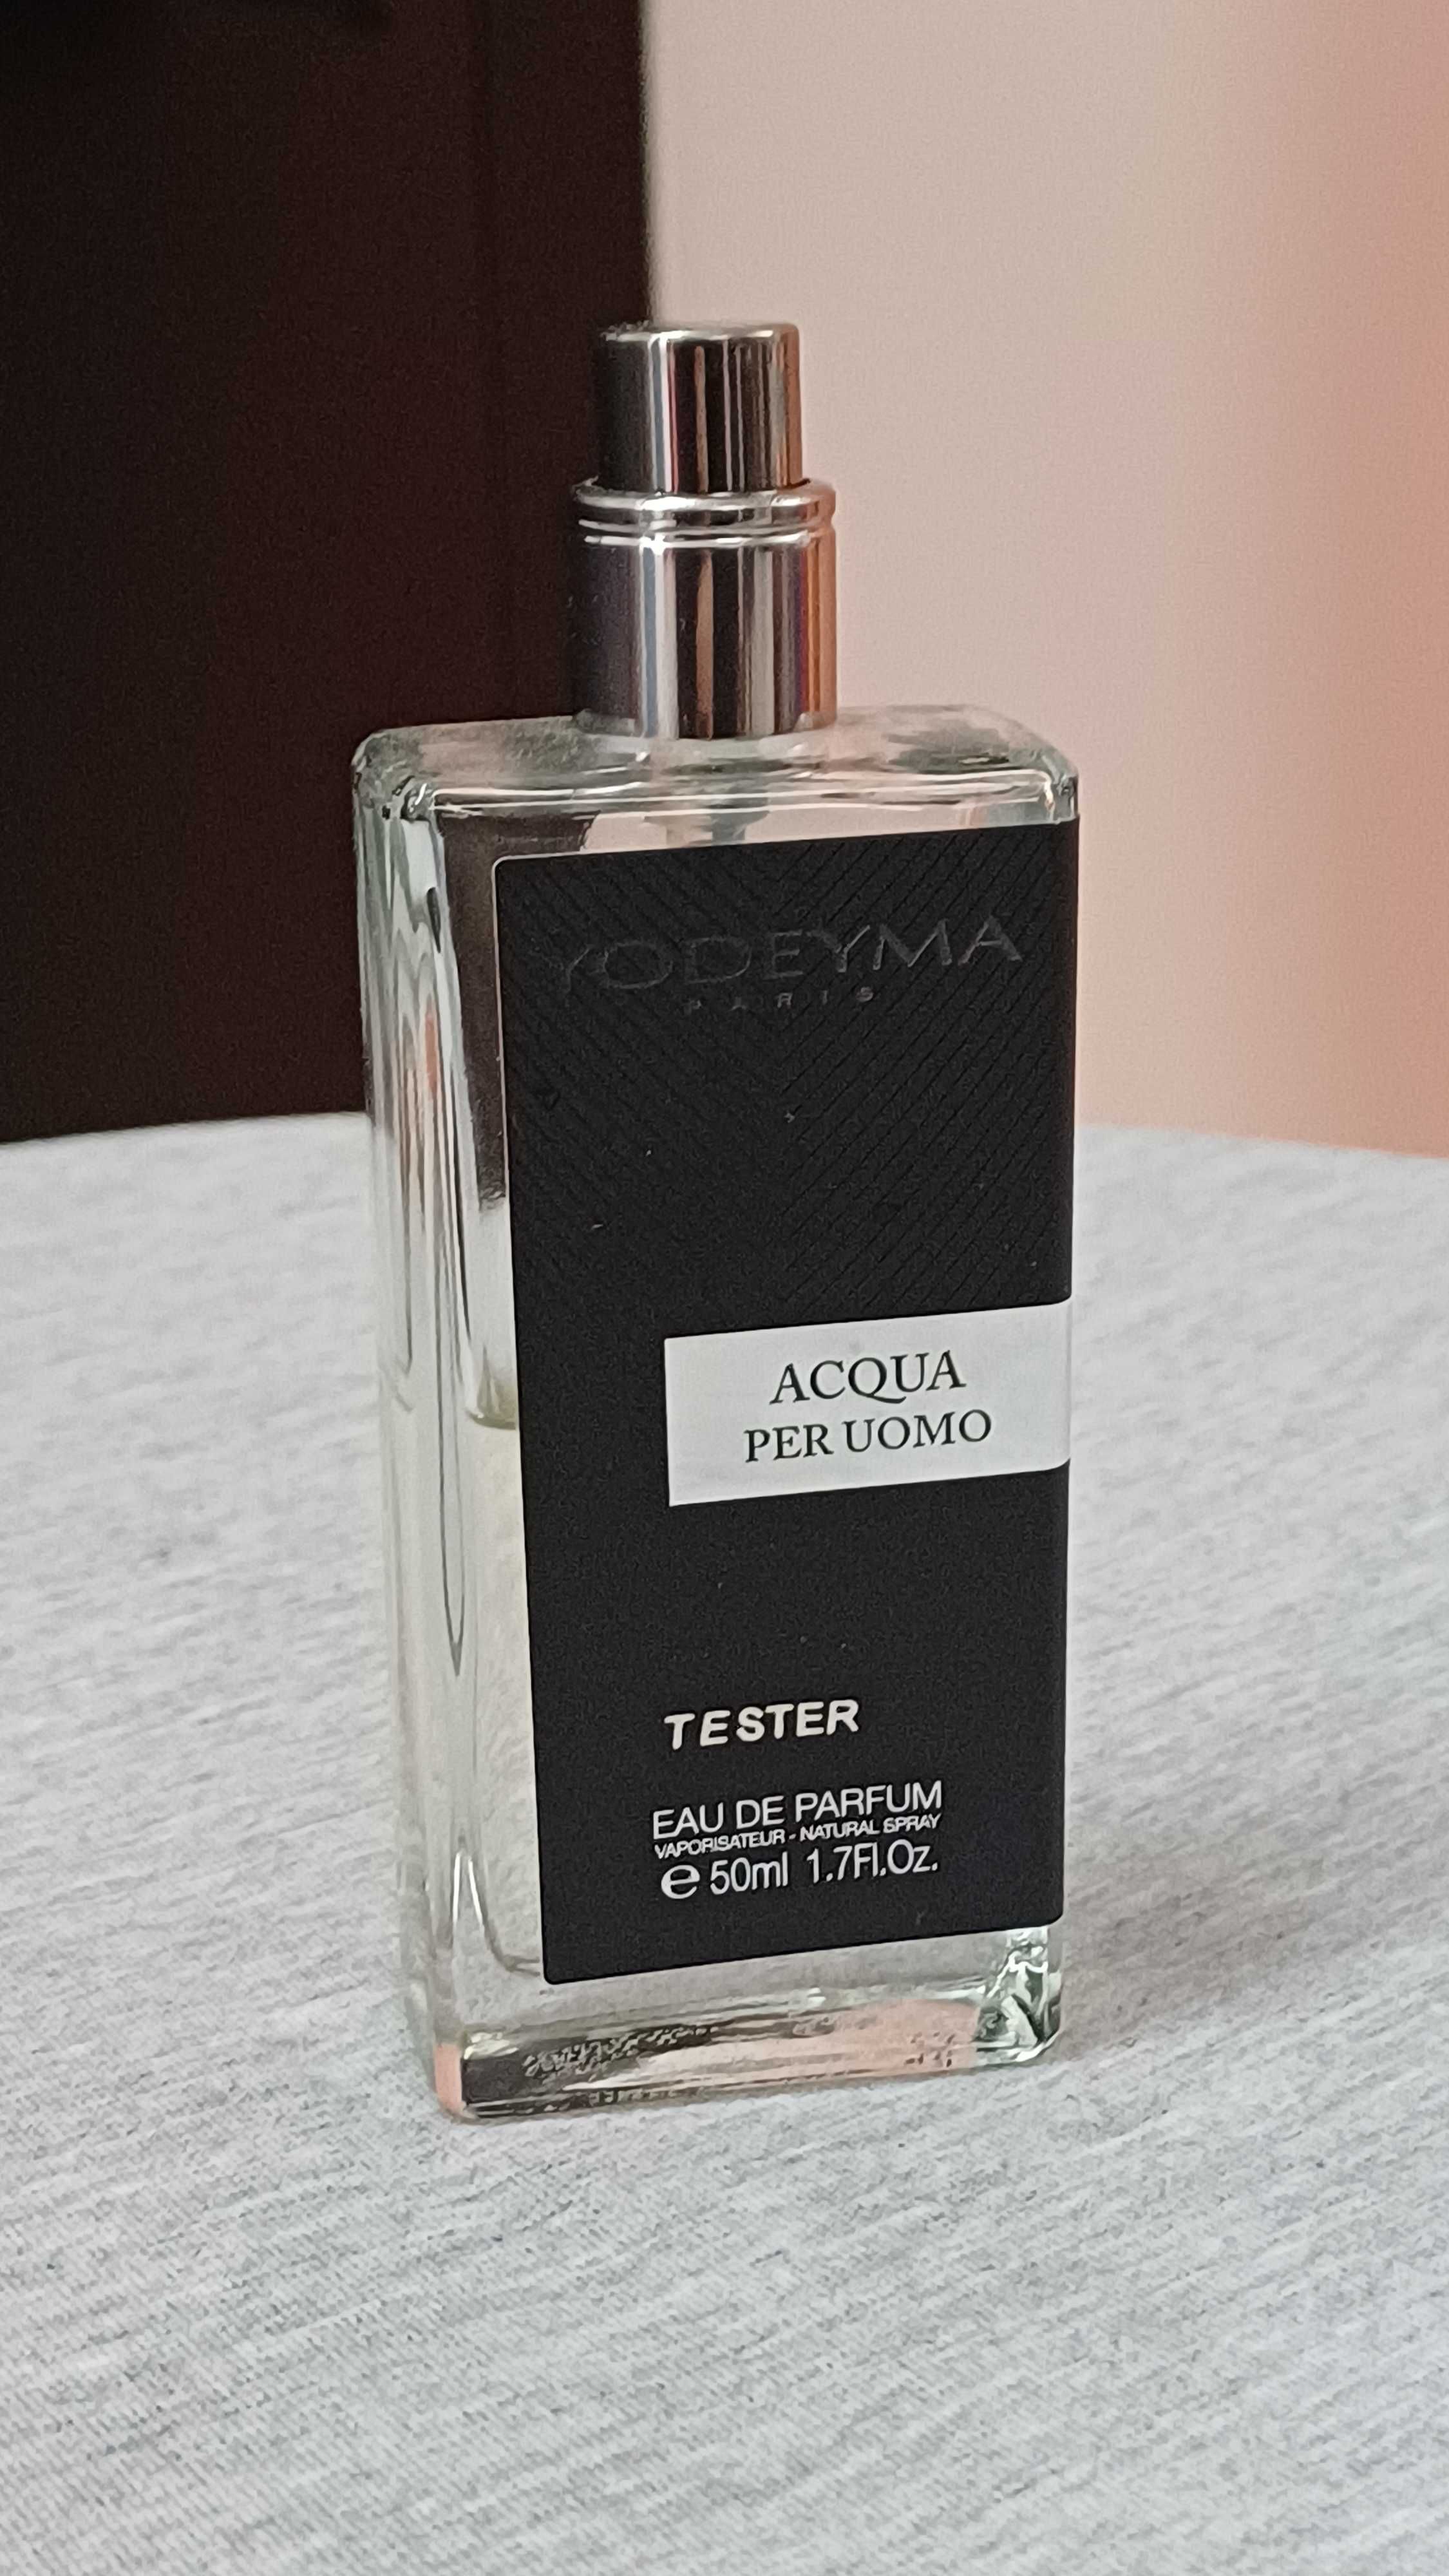 Męskie perfumy Acqua Per Uomo, flakonik nigdy nieużywany